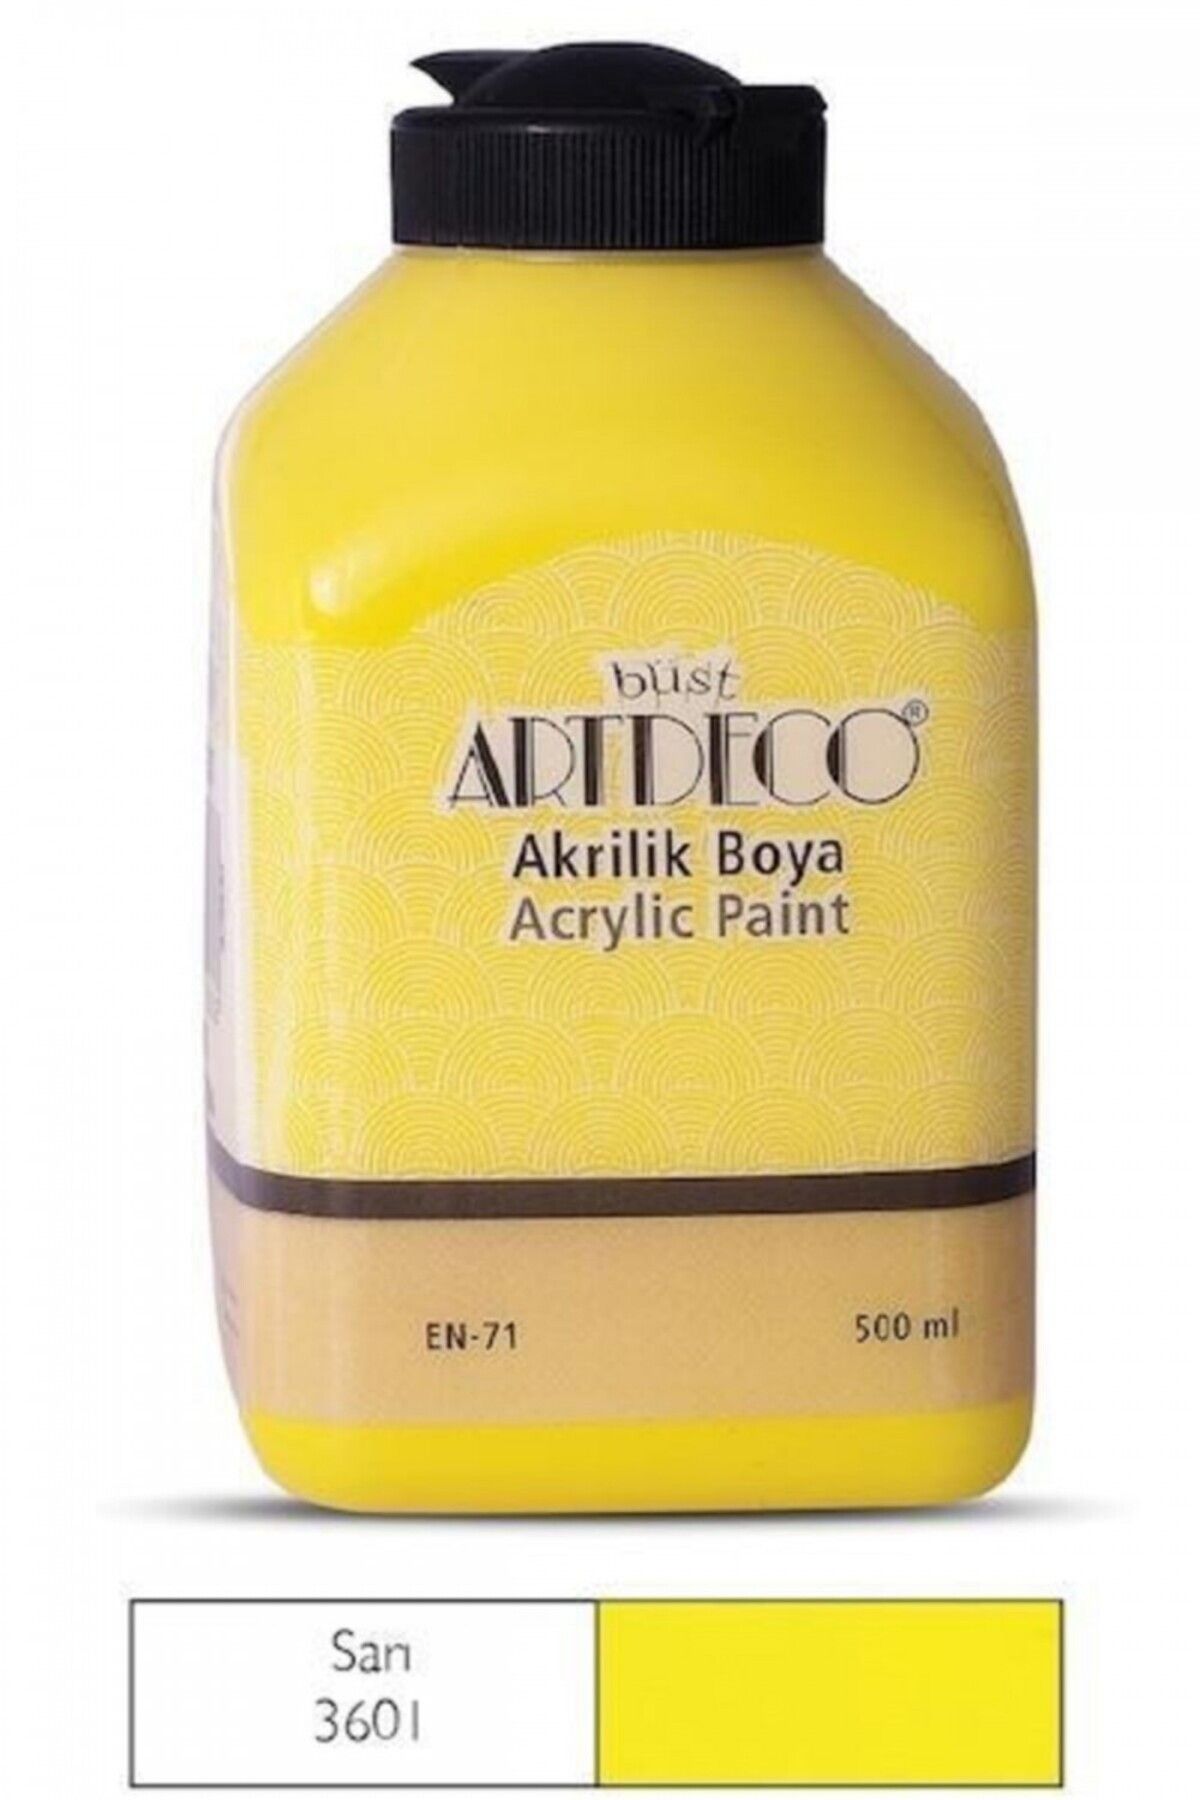 Artdeco Akrilik Boya 500ml Sarı / 3601